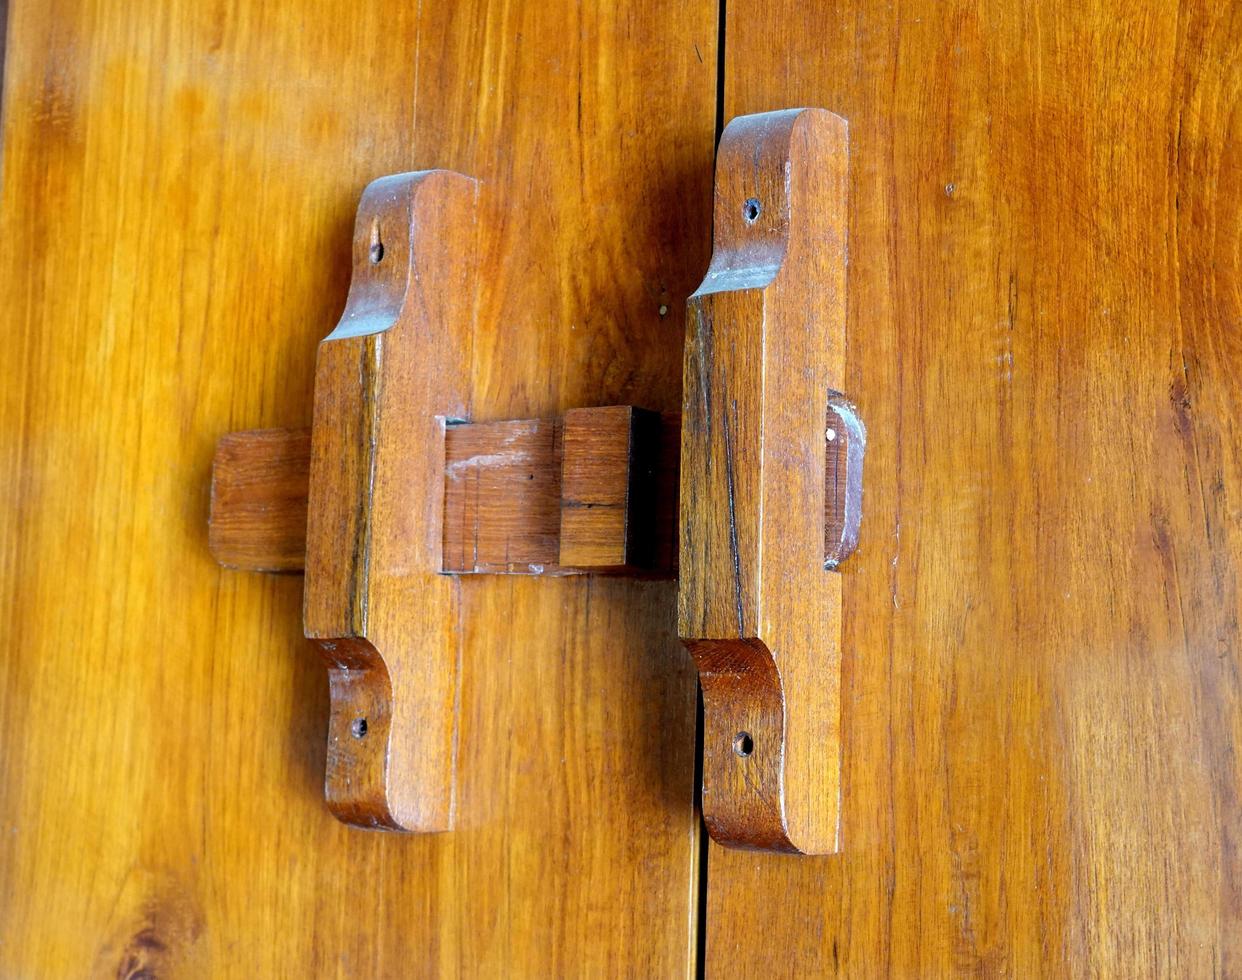 Fait main en bois fermer à clé ou ancien porte loquet. Thaïlande traditionnel bois porte photo